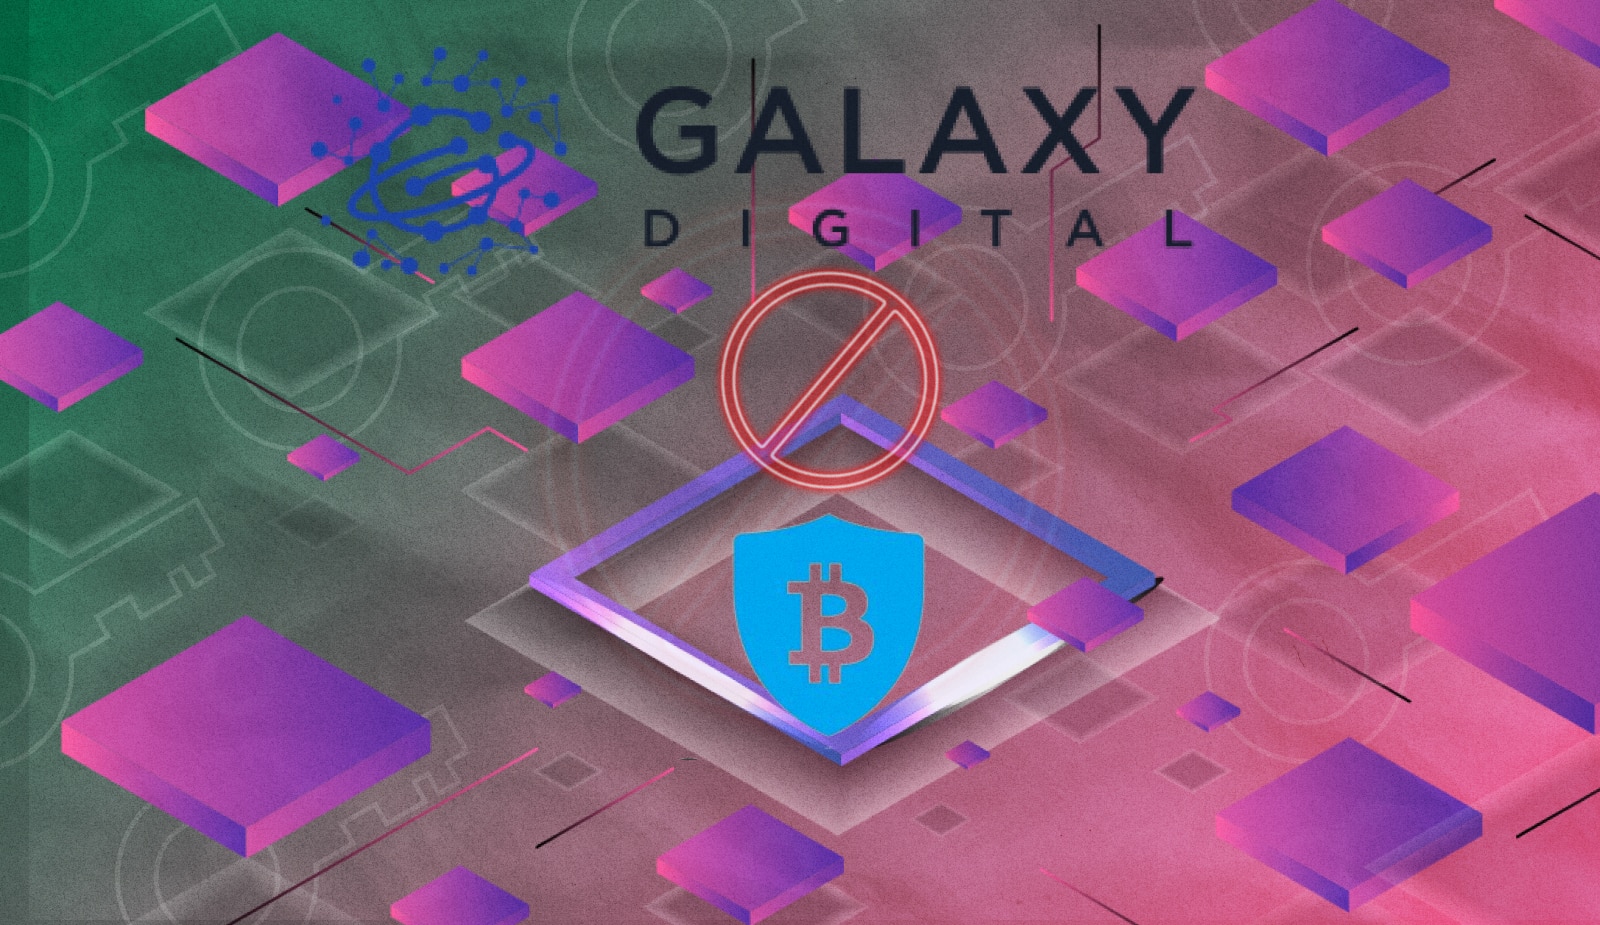 Galaxy Digital отказалась от сделки с BitGo на 1,2 млрд долларов. Заглавный коллаж новости.